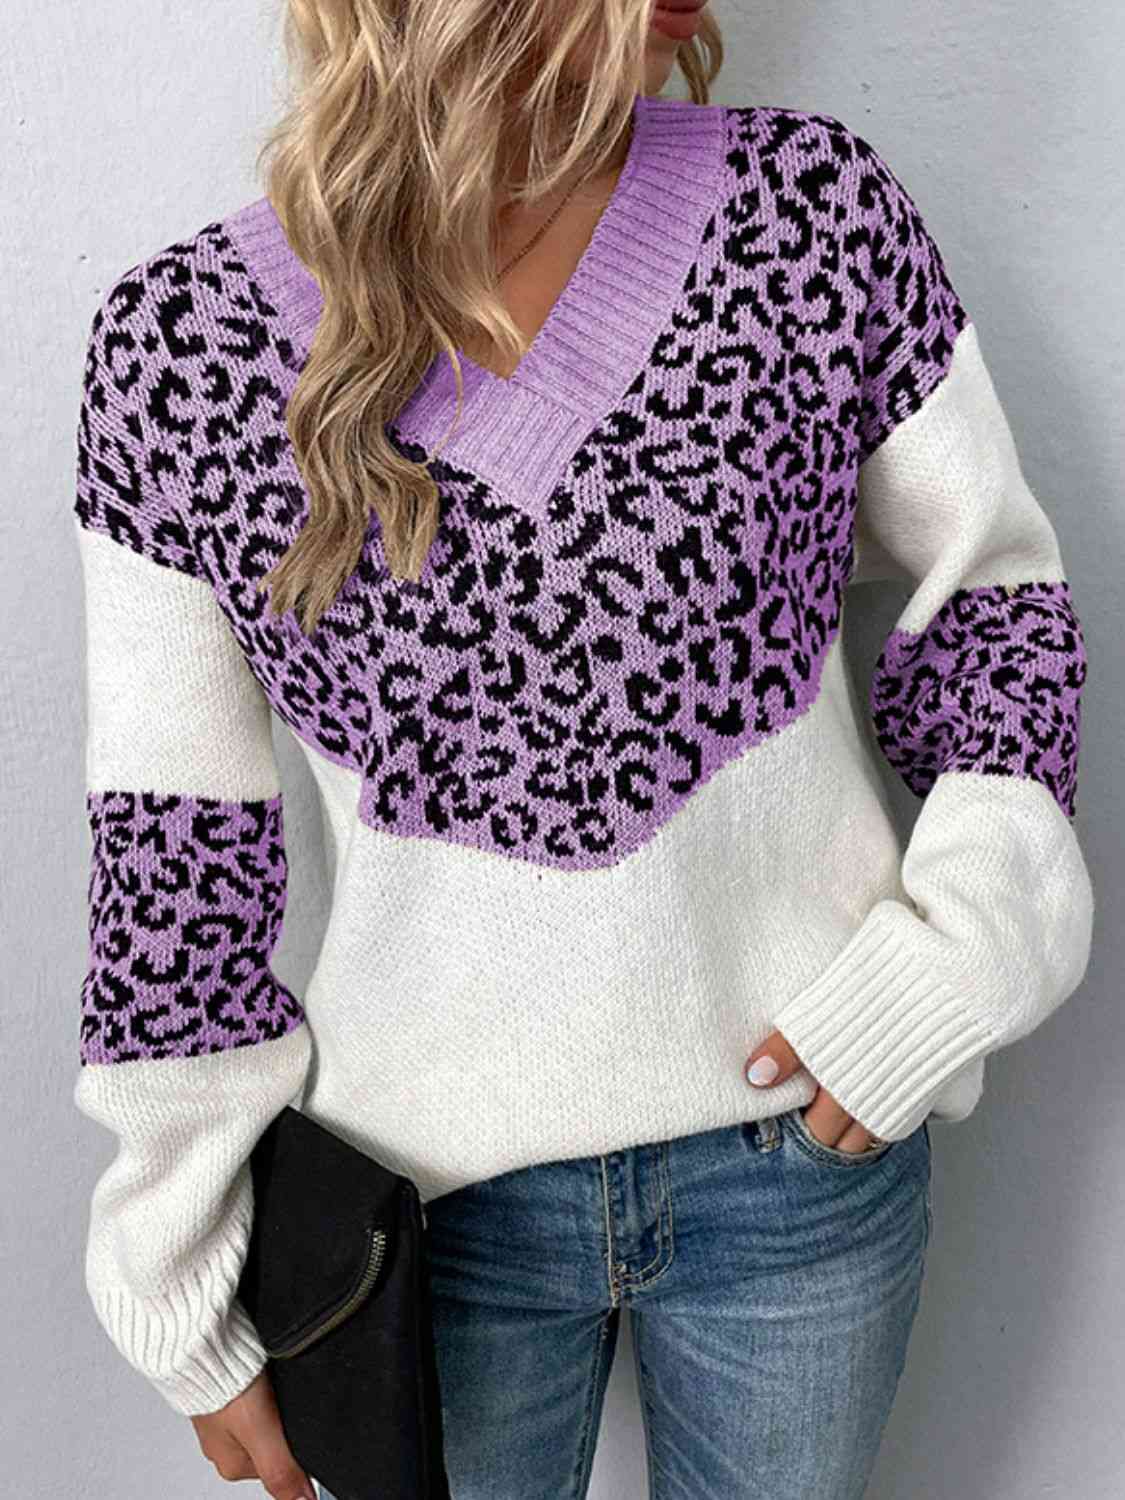 Leopard V Neck Dropped Shoulder Sweater